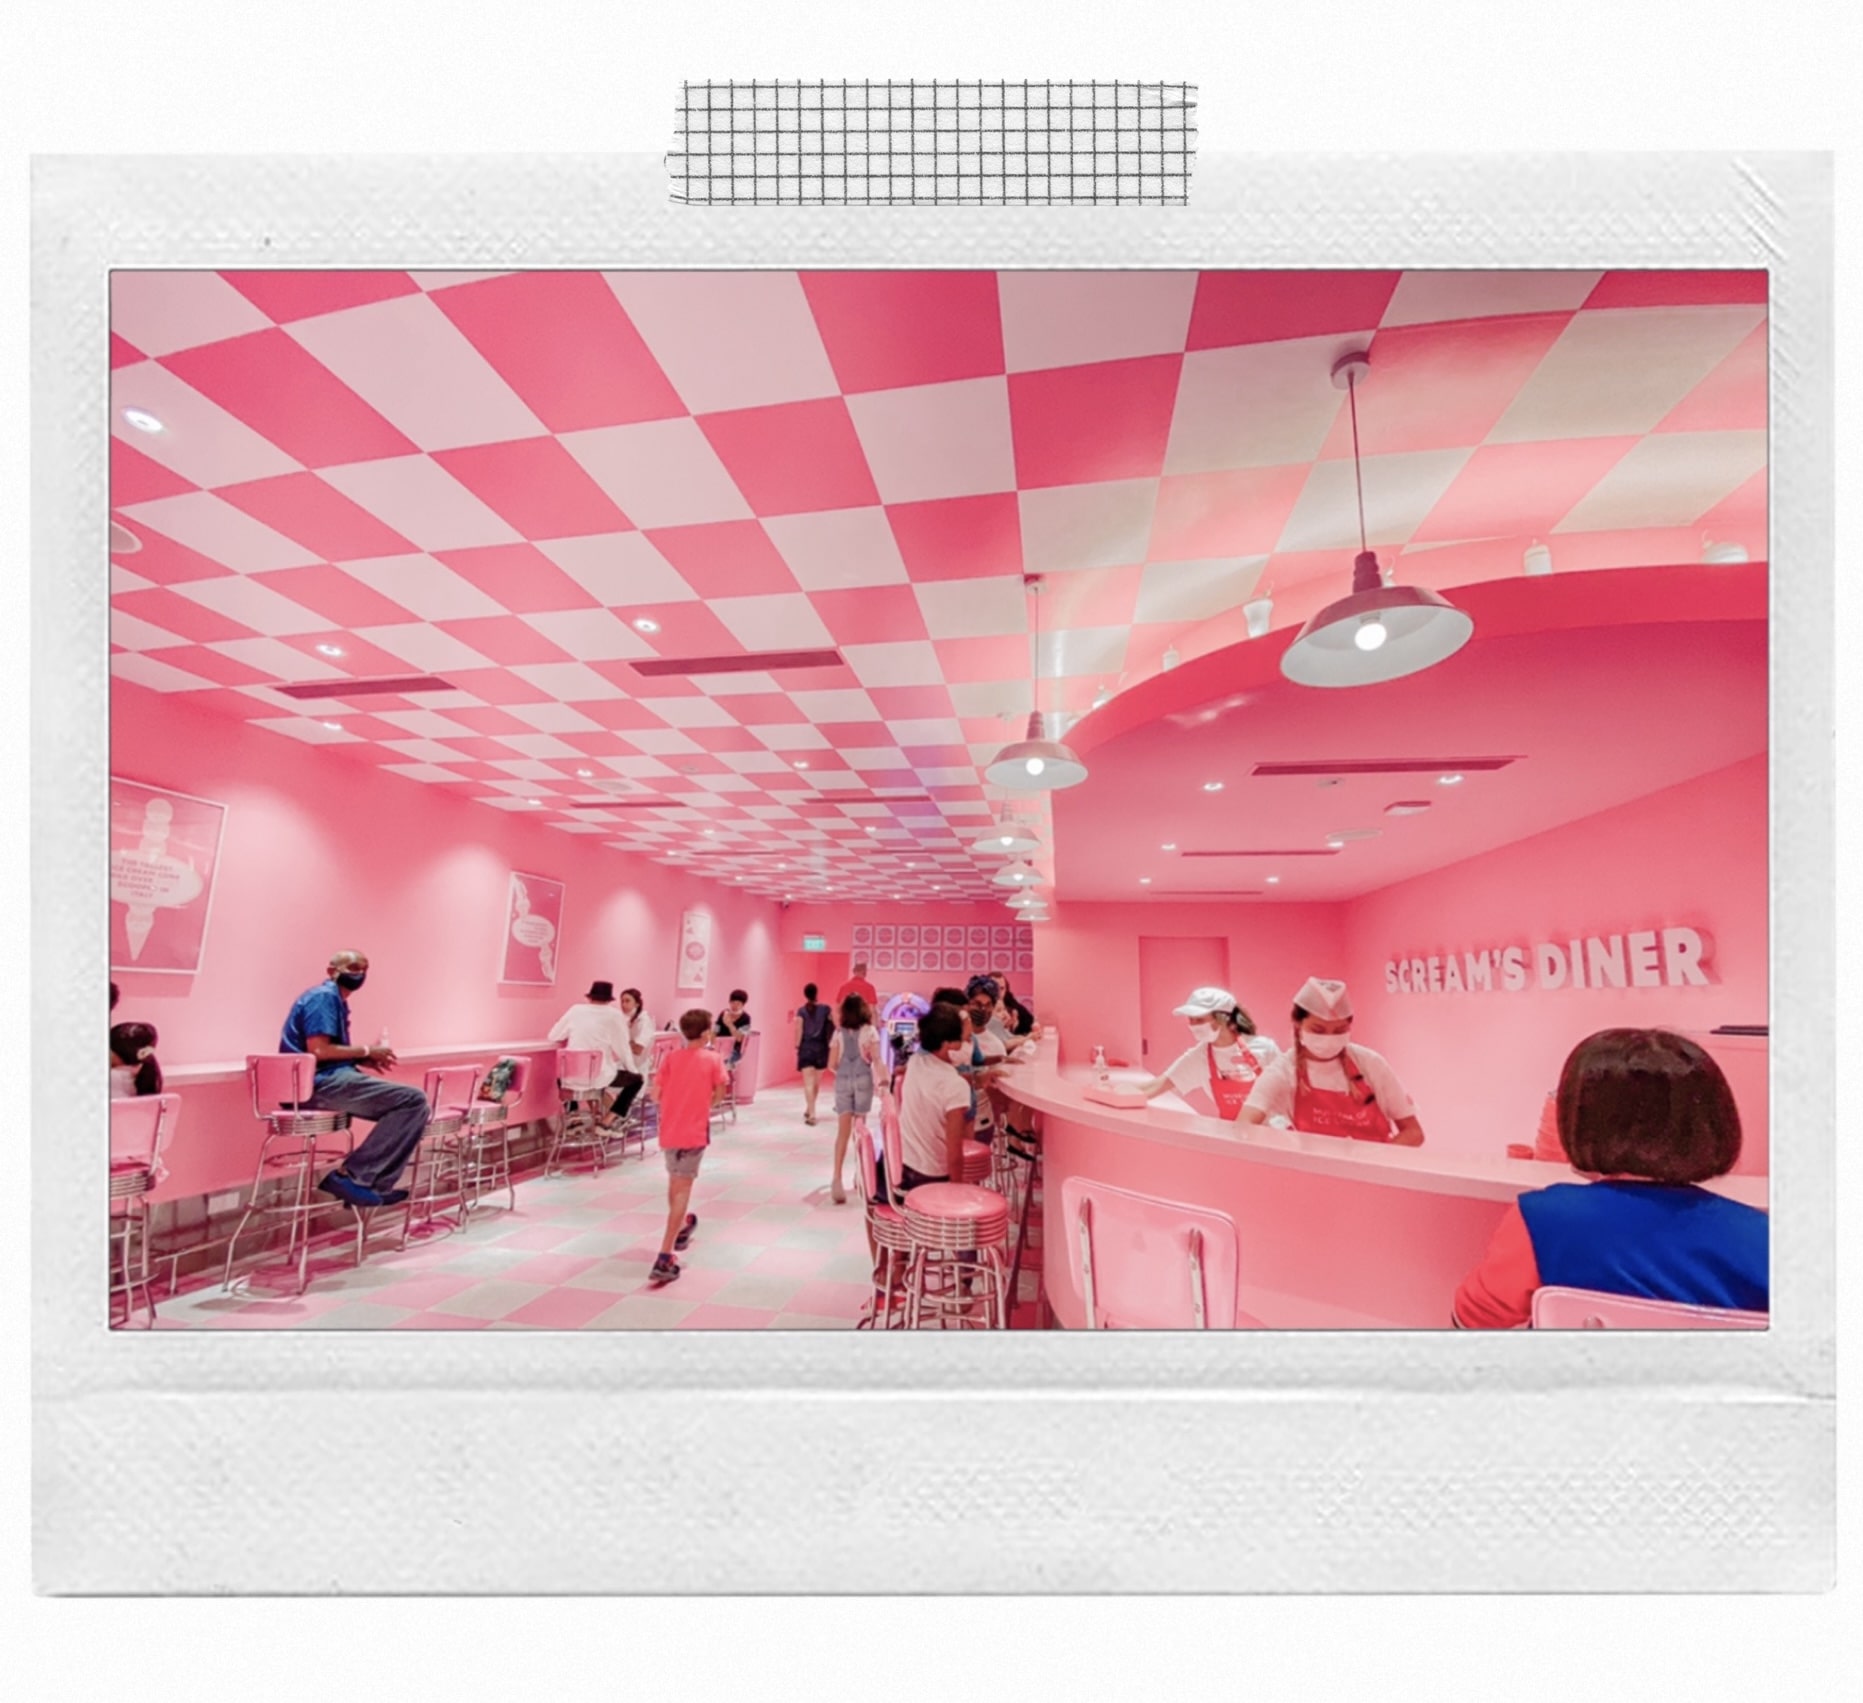 ice-cream-museum-diner